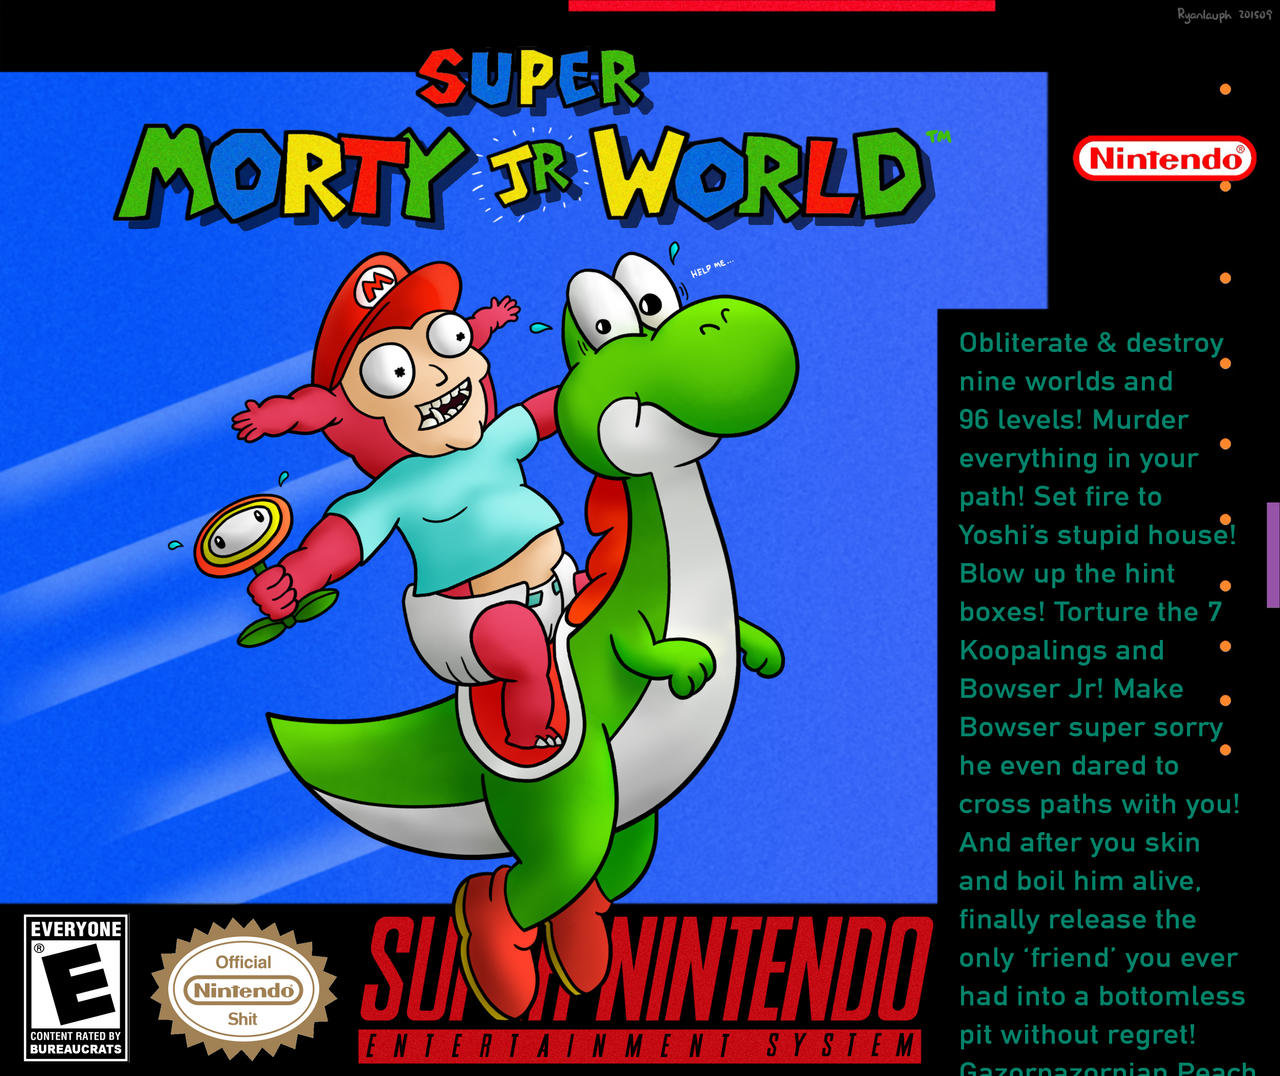 Super Morty Jr World